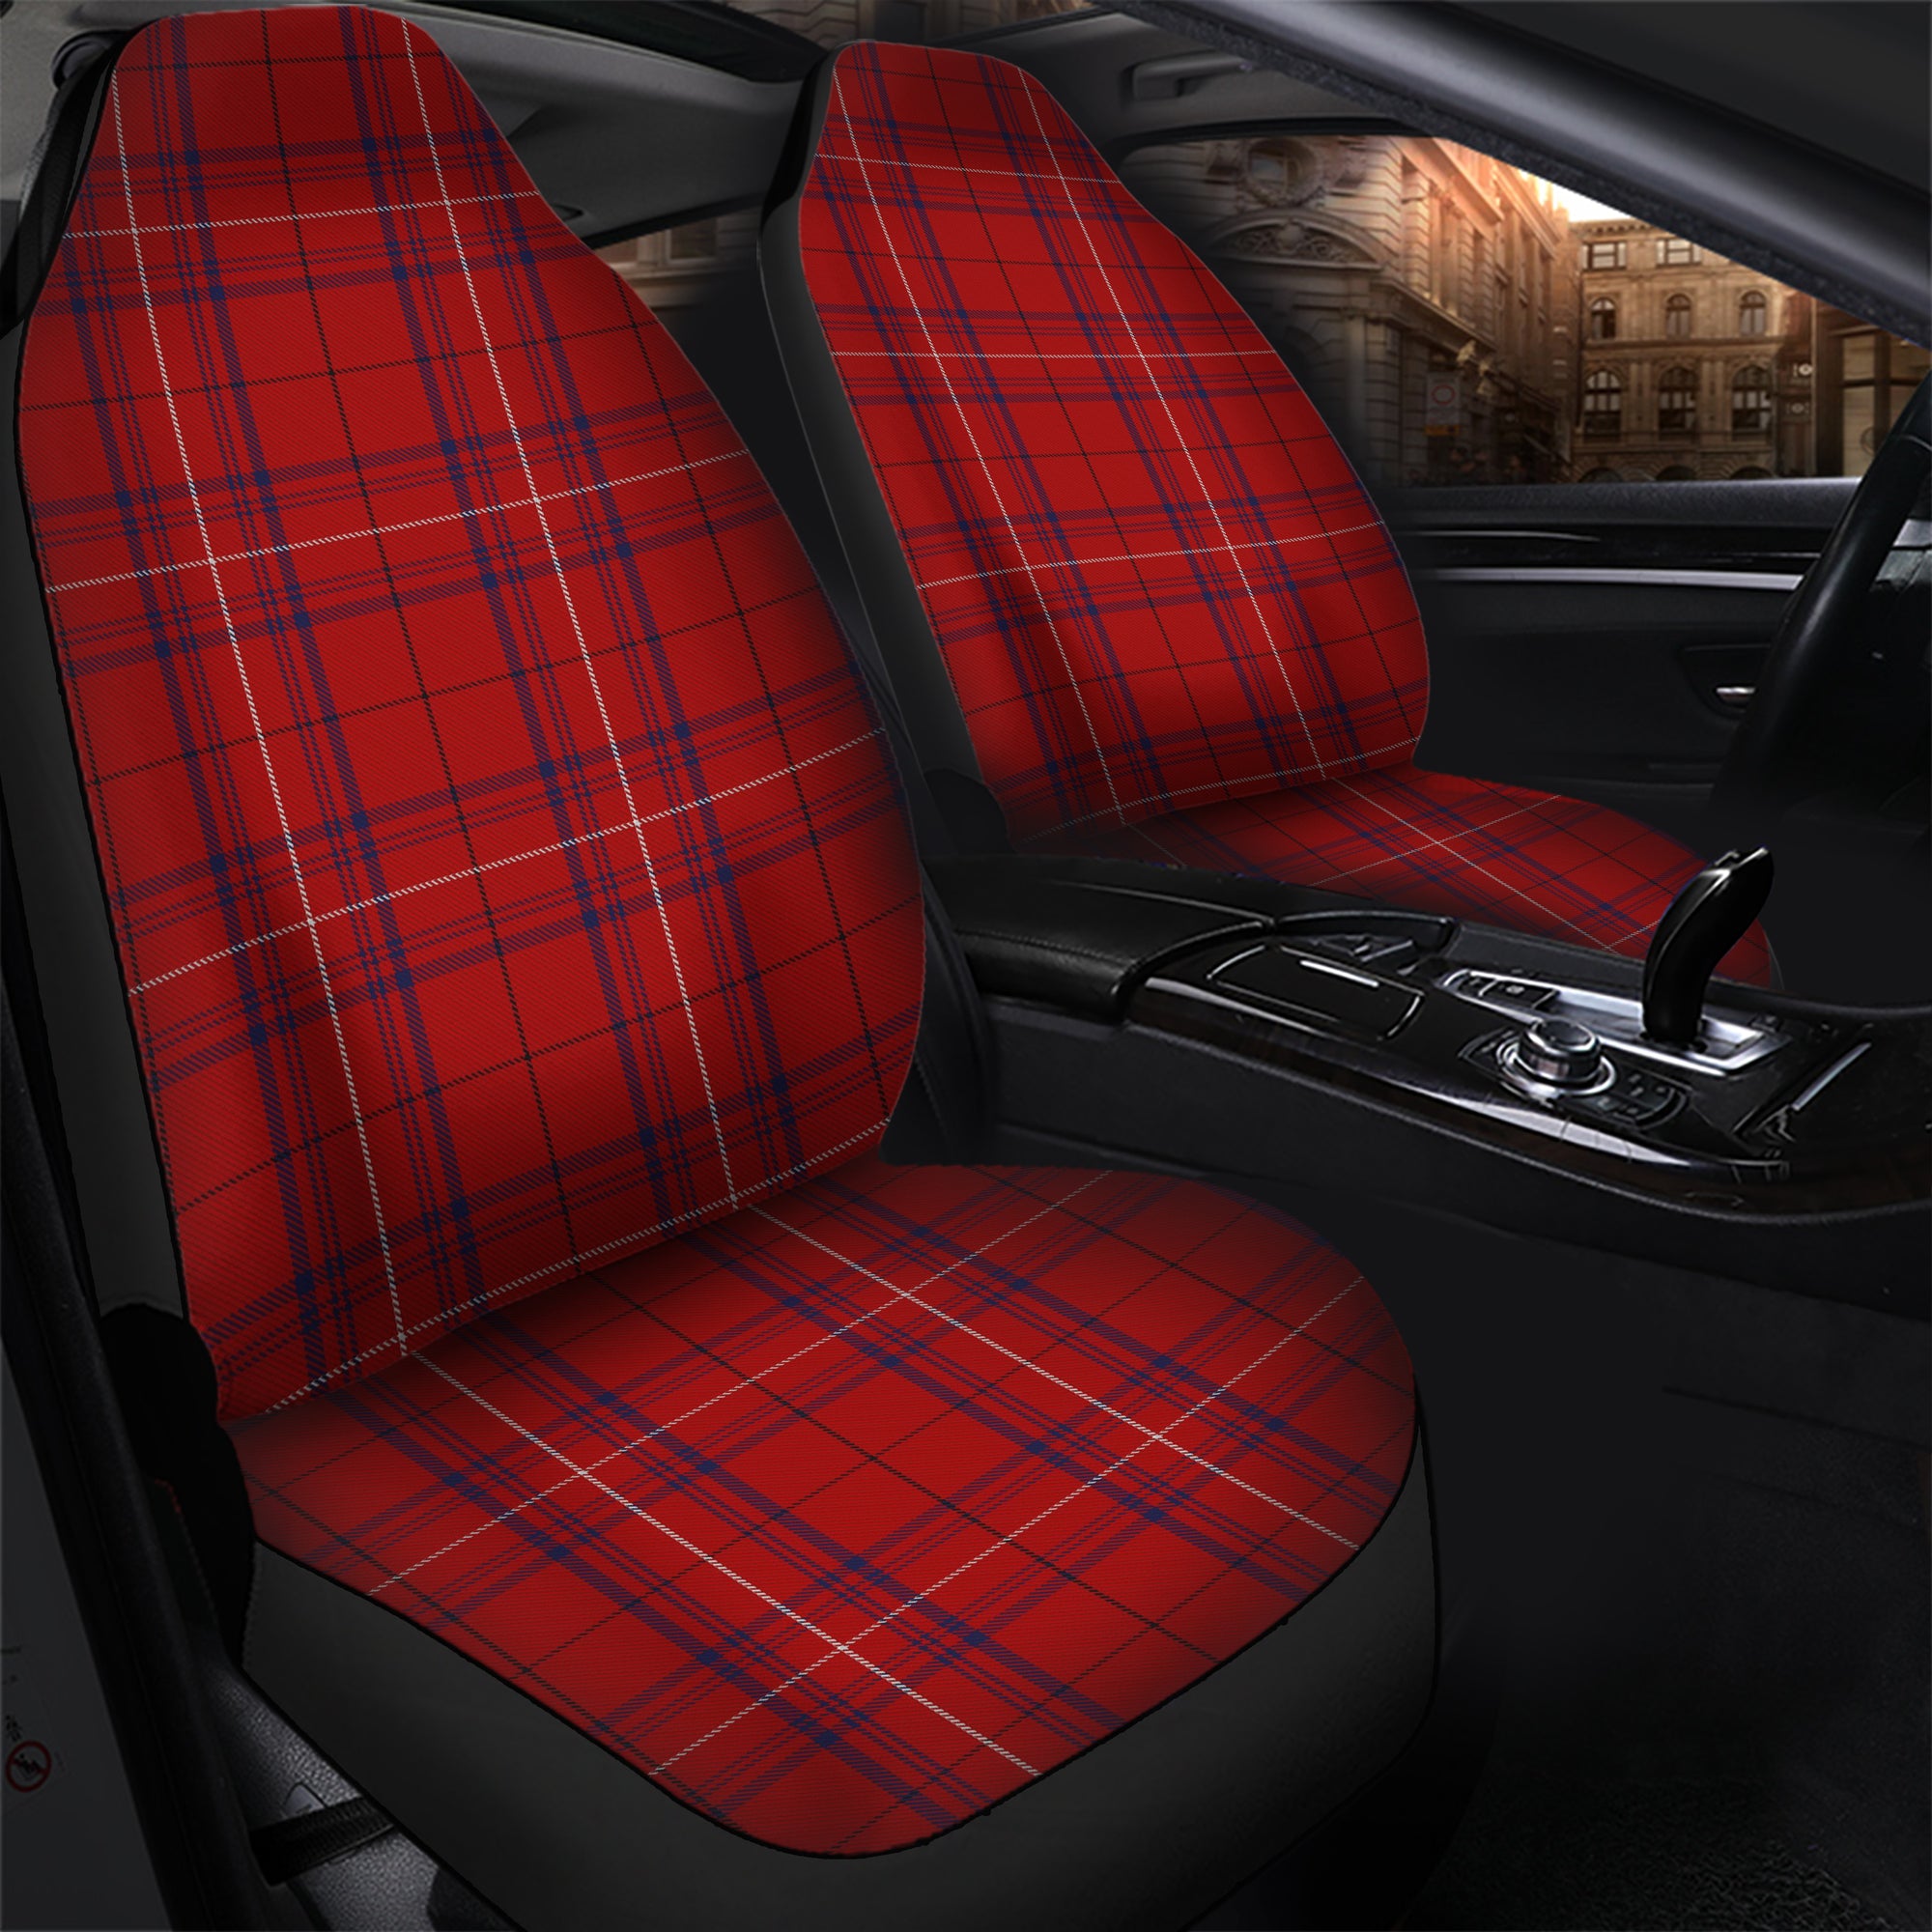 scottish-rose-of-kilravock-clan-tartan-car-seat-cover